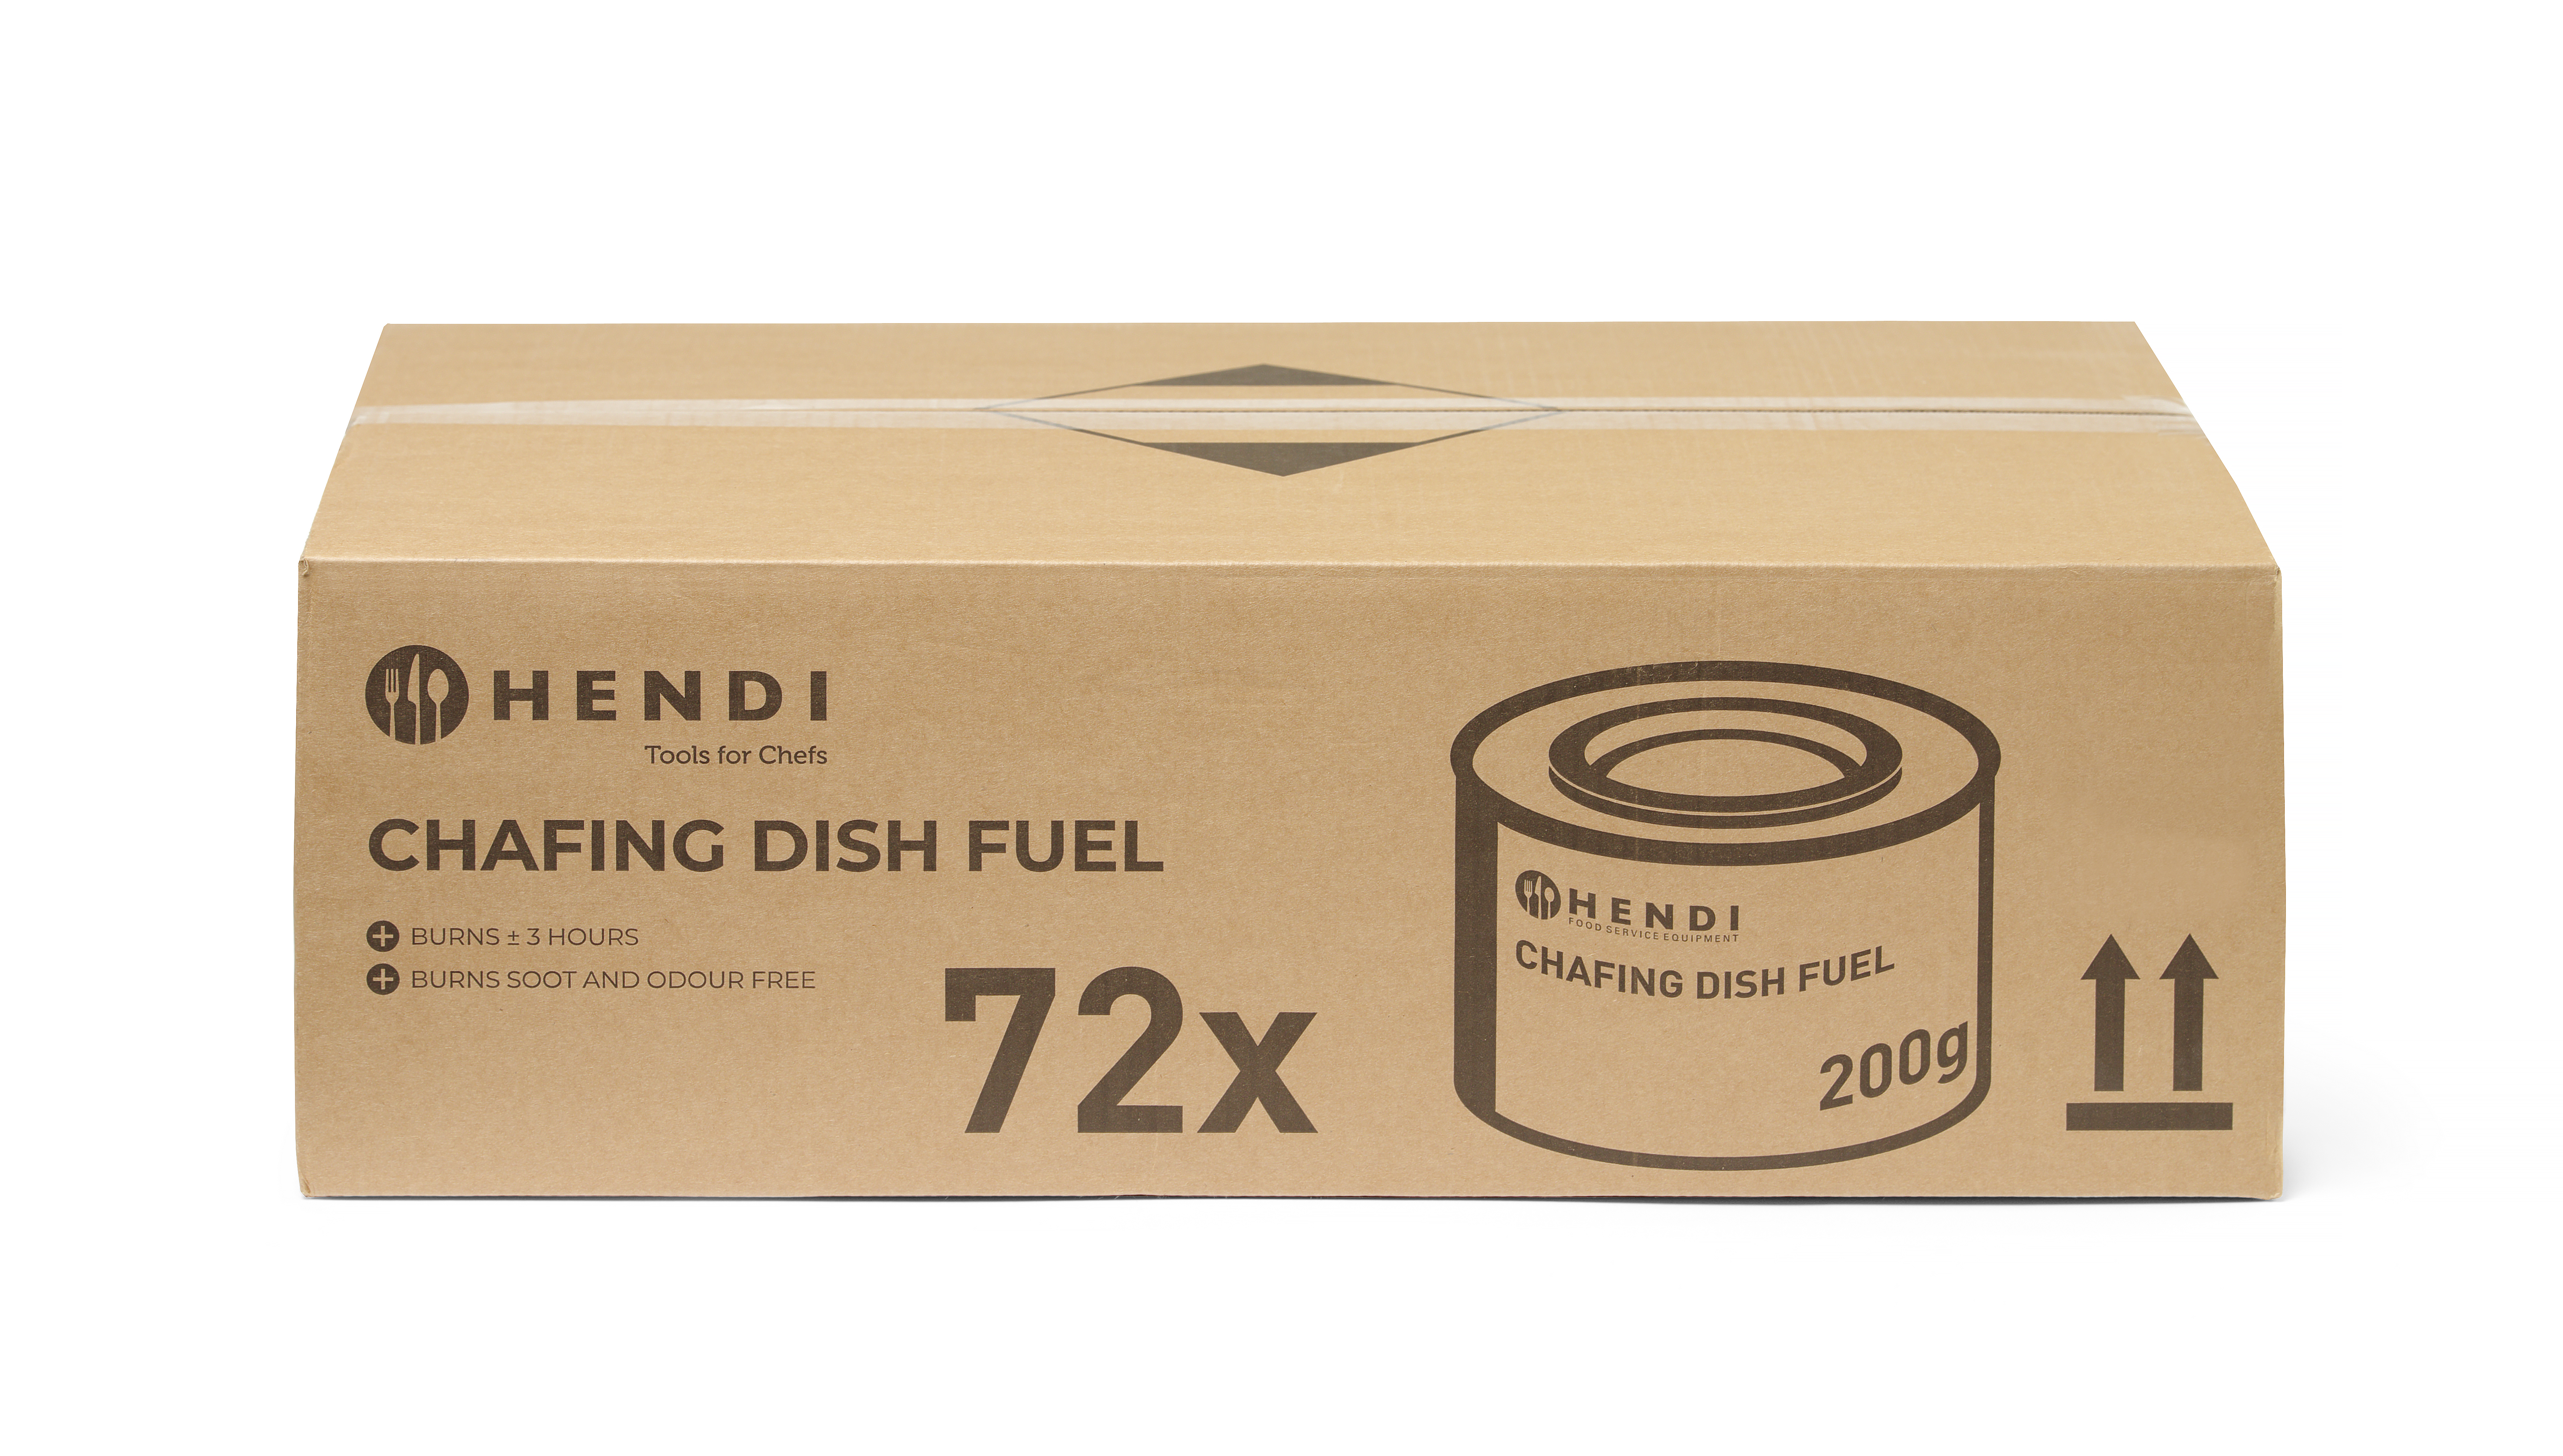 Pâte combustible pour chafing dish en boîte NL DE FR EN - HENDI